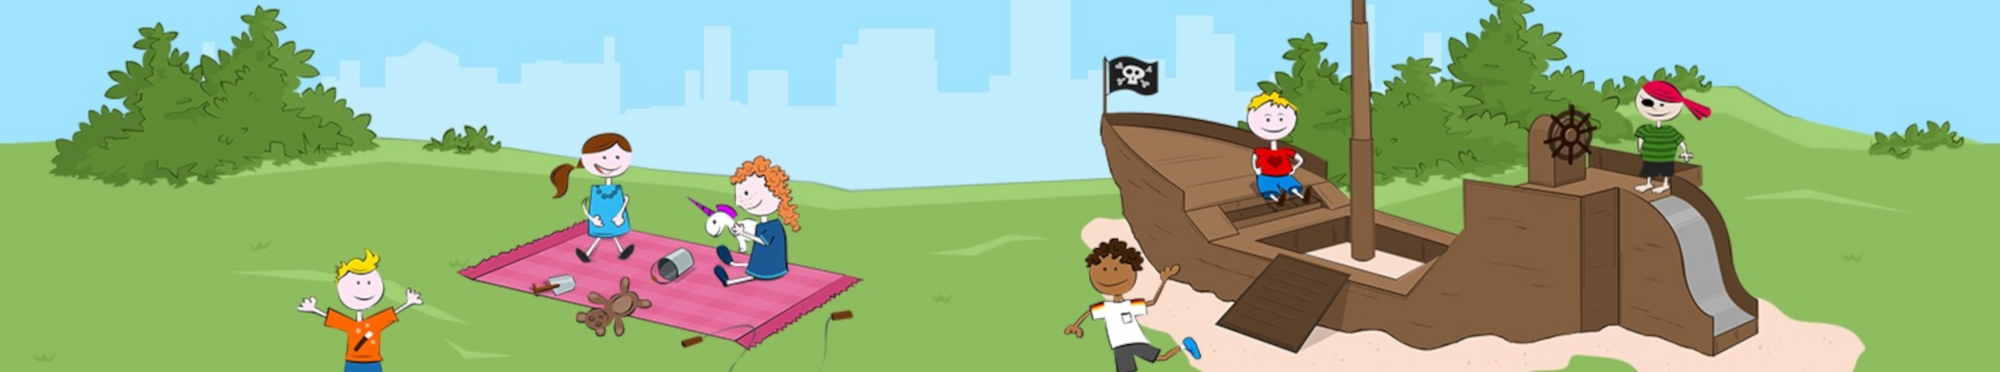 Grafik: Spielende Kinder auf einem Piratenschiff und einer Spieldecke